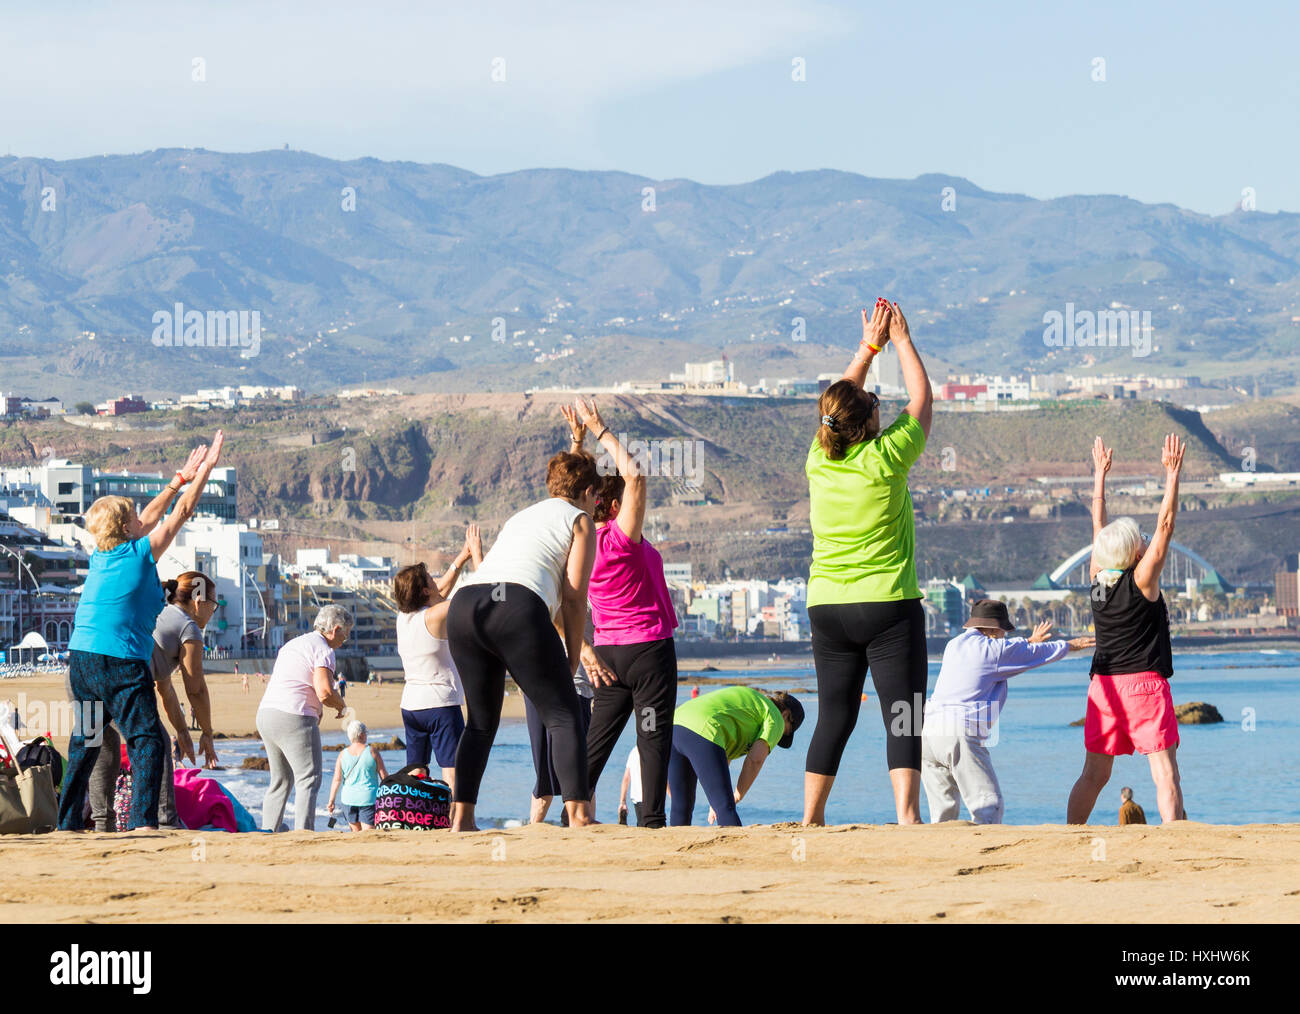 Les retraités de se tenir en forme classe sur beach en Espagne Banque D'Images